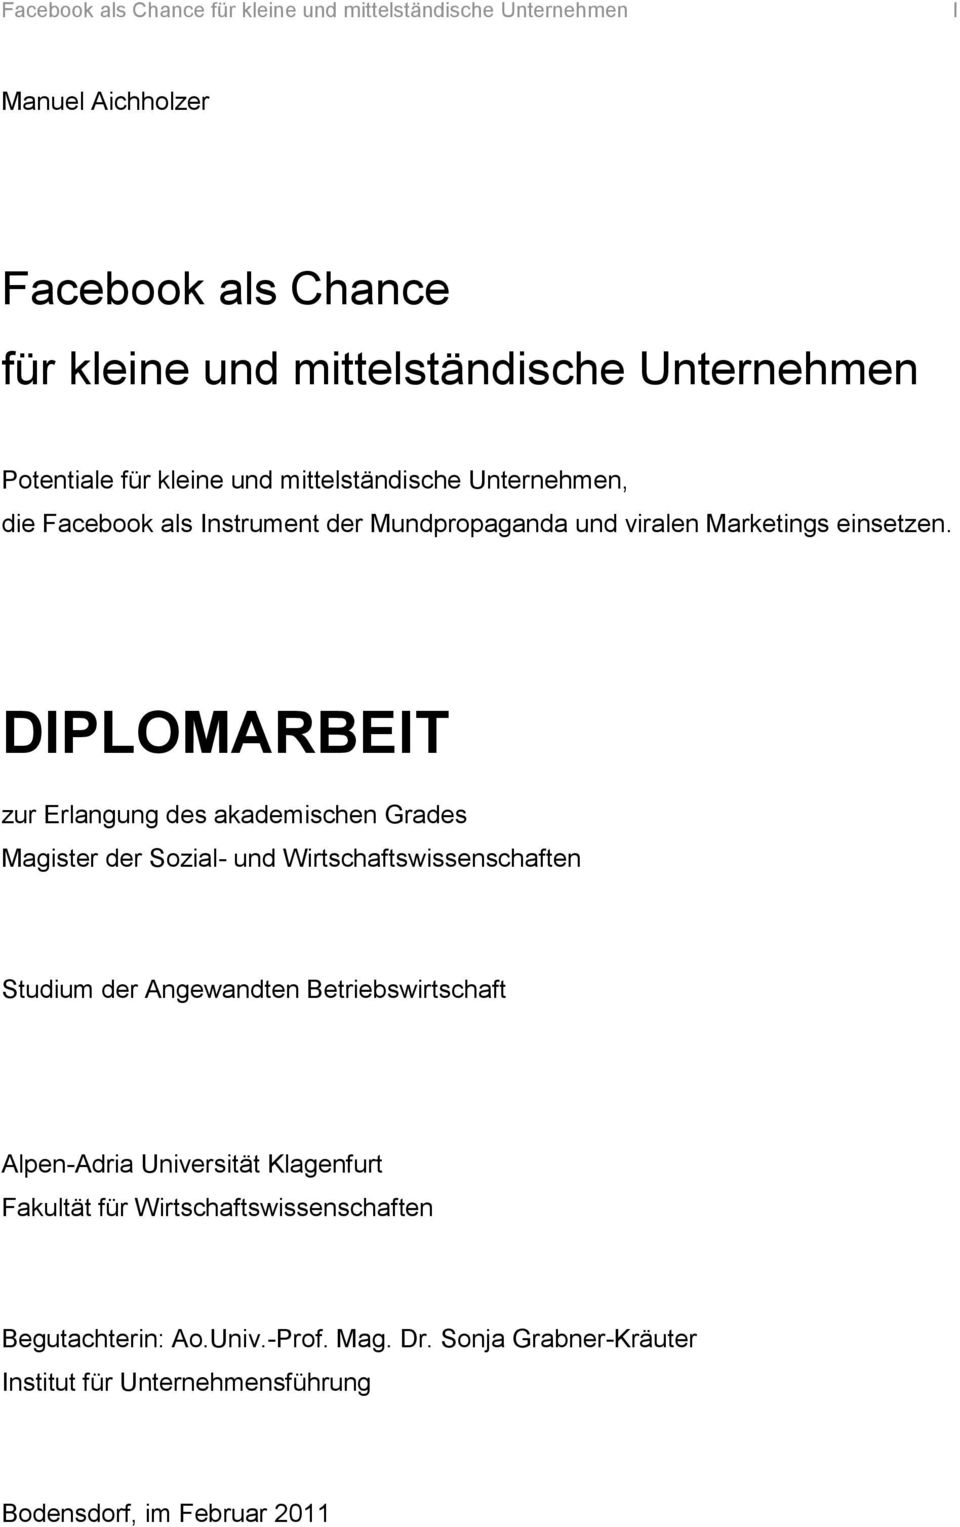 DIPLOMARBEIT zur Erlangung des akademischen Grades Magister der Sozial- und Wirtschaftswissenschaften Studium der Angewandten Betriebswirtschaft Alpen-Adria